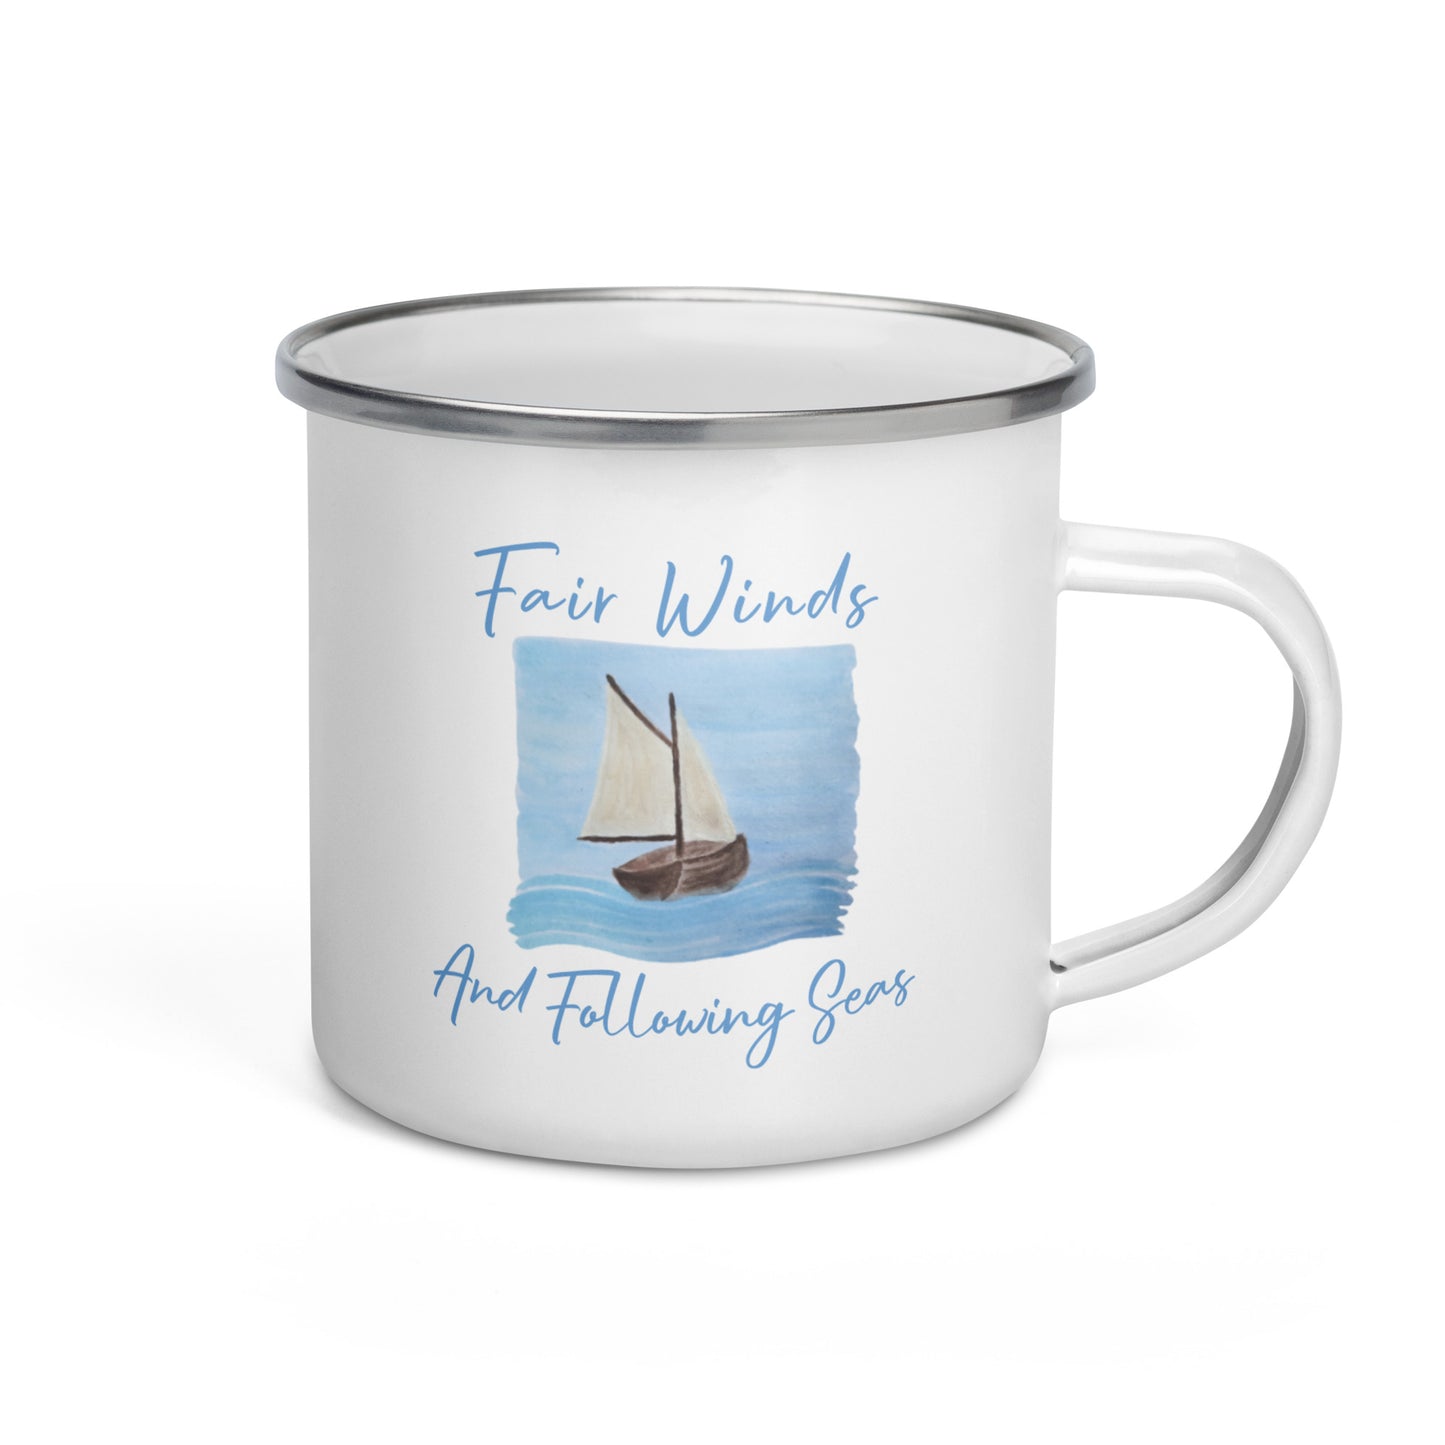 Sailing mug fair winds following seas